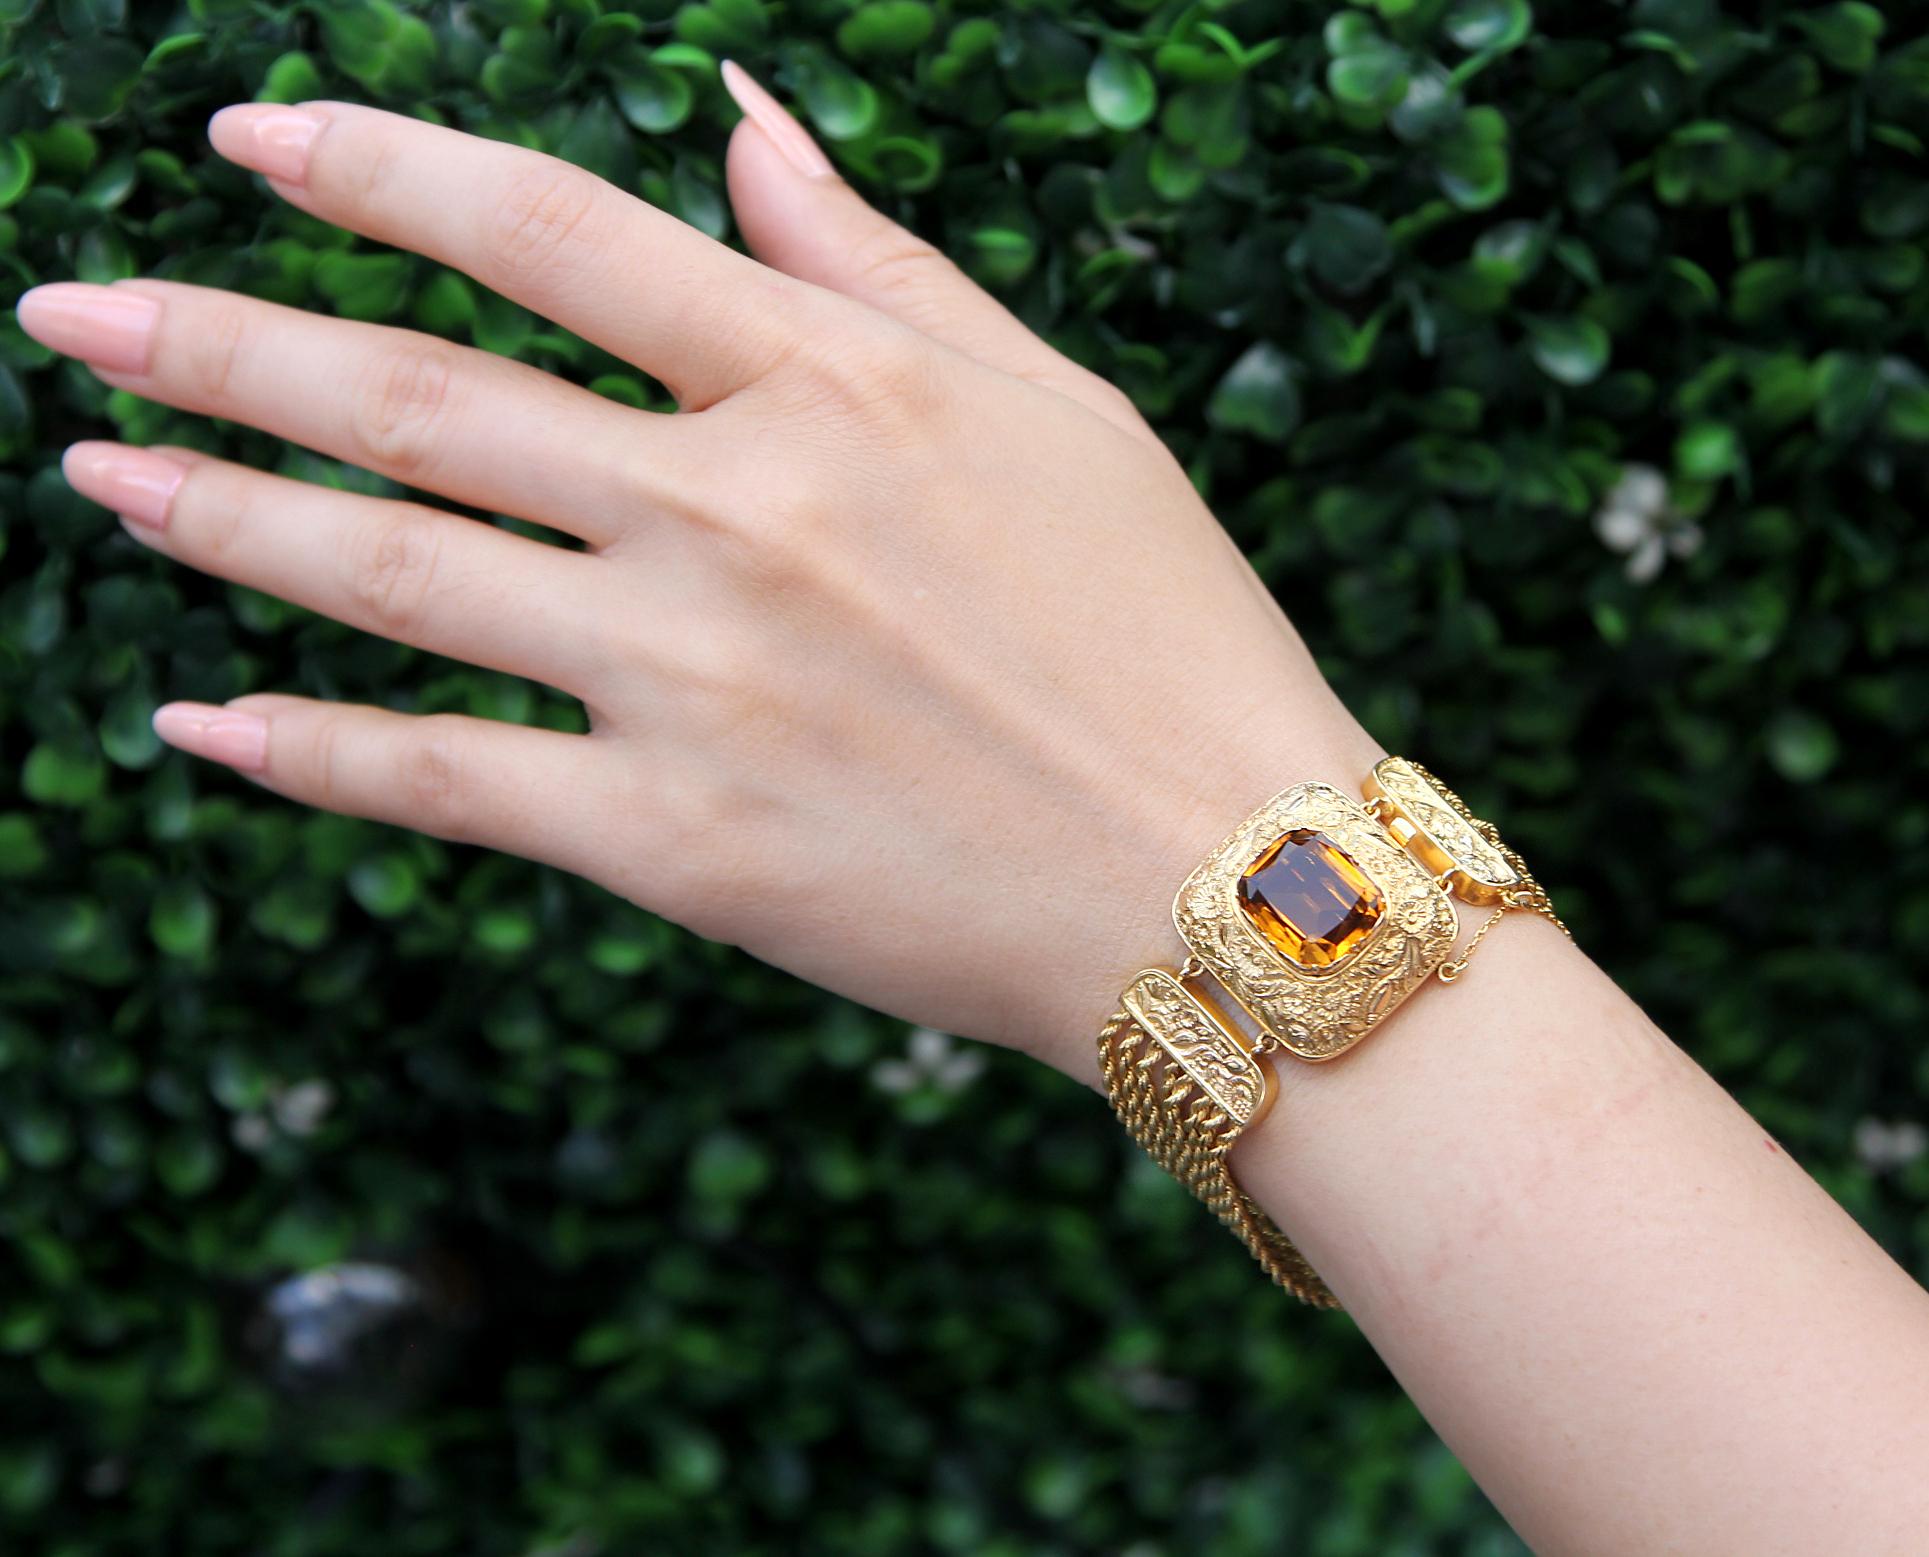 Ein antikes viktorianisches Armband mit mehreren Strängen, besetzt mit Citrin in 14/15 Karat Gelbgold. 
Im Mittelpunkt des Armbands steht ein gelb-orangefarbener Citrin im Kissenschliff, der mit einer Goldprägung aus Blüten und Blättern verziert